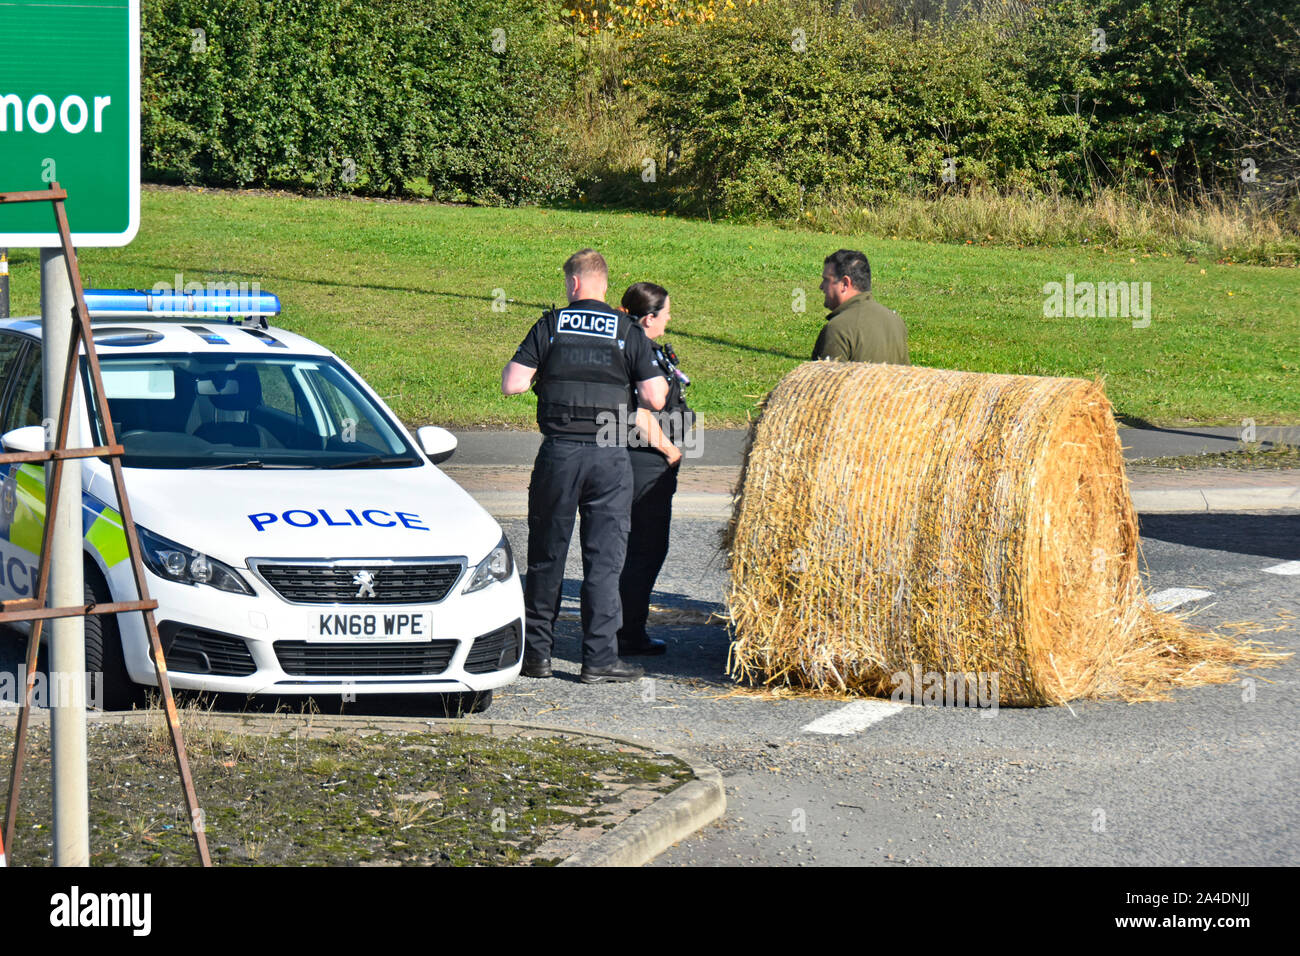 Policier et agent de police y assister en voiture de police le ballot de paille dans un incident routier689 rond-point Rushyford County Durham England UK (voir info) Banque D'Images